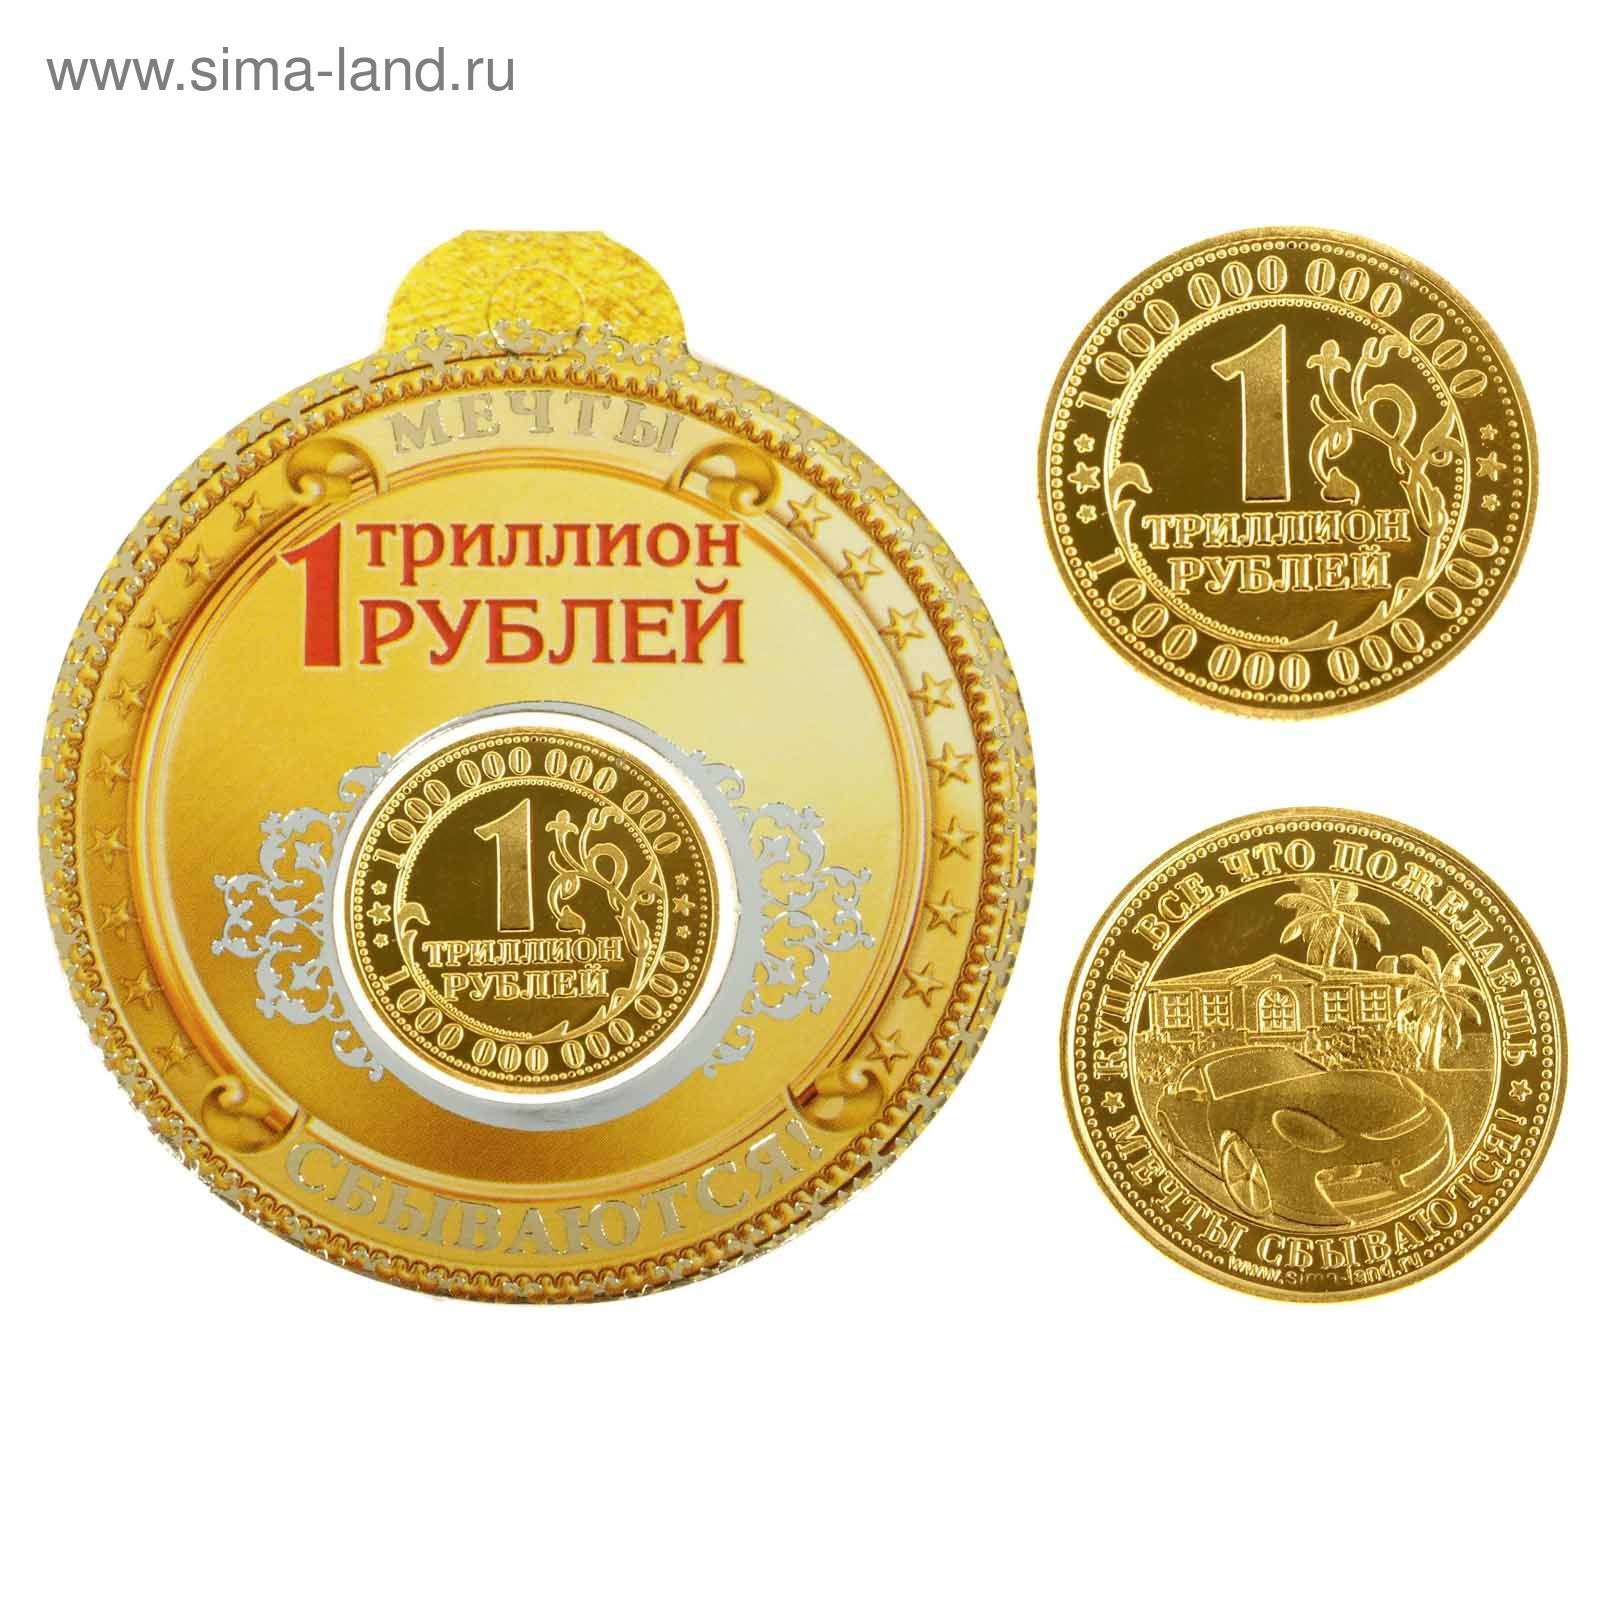 1 тин в рублях. Триллион рублей монета. 1 Триллион рублей. Монета один триллион рублей. Монеты за триллион рублей.